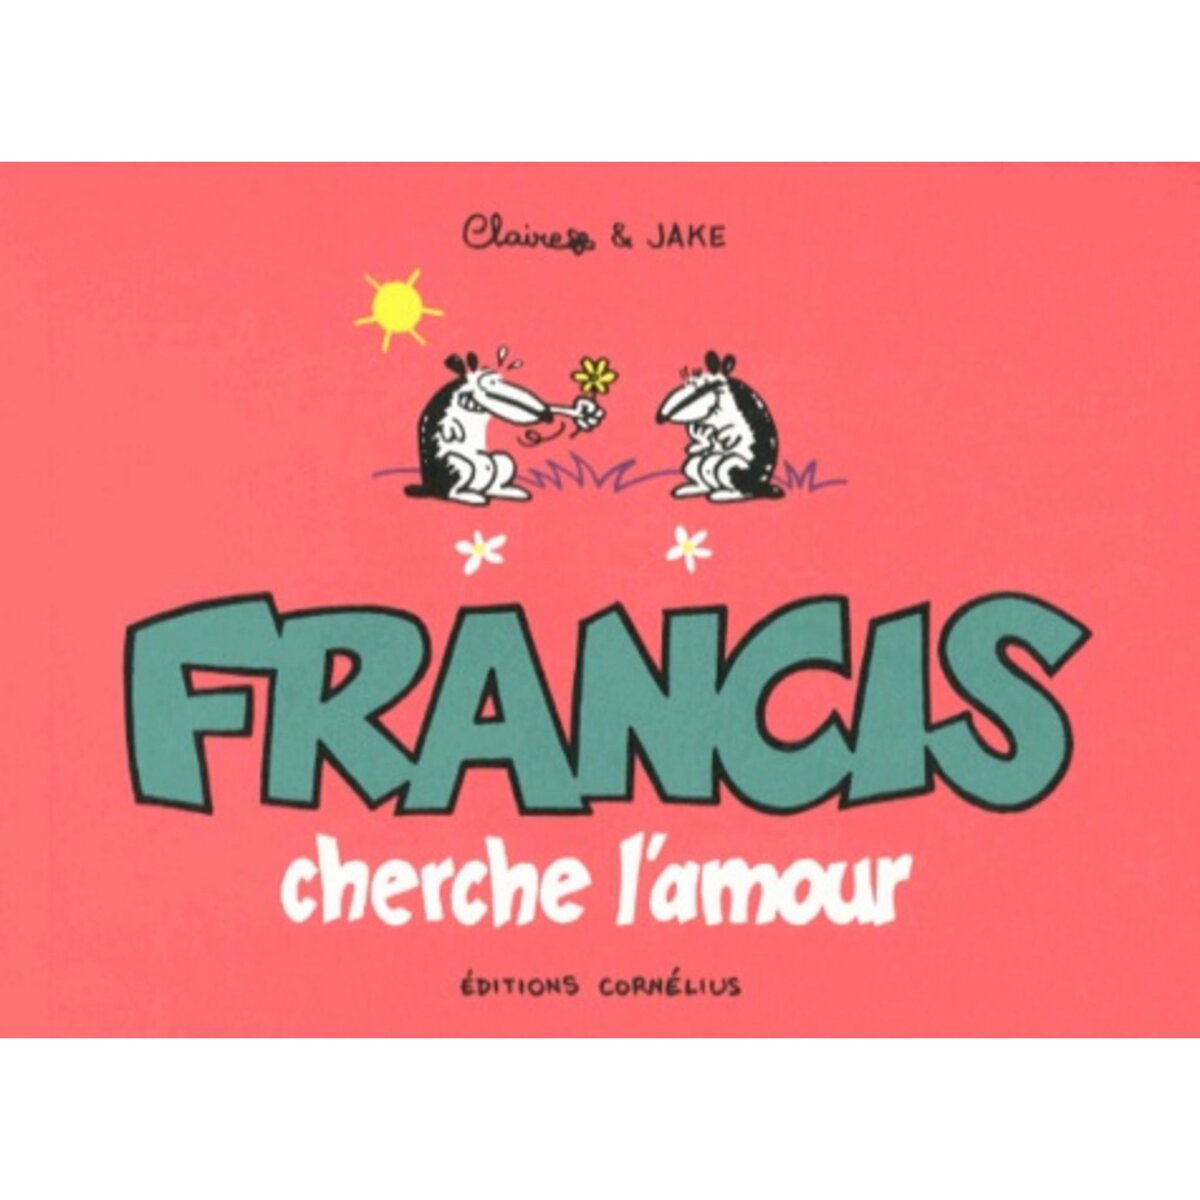  FRANCIS CHERCHE L'AMOUR, Bouilhac Claire